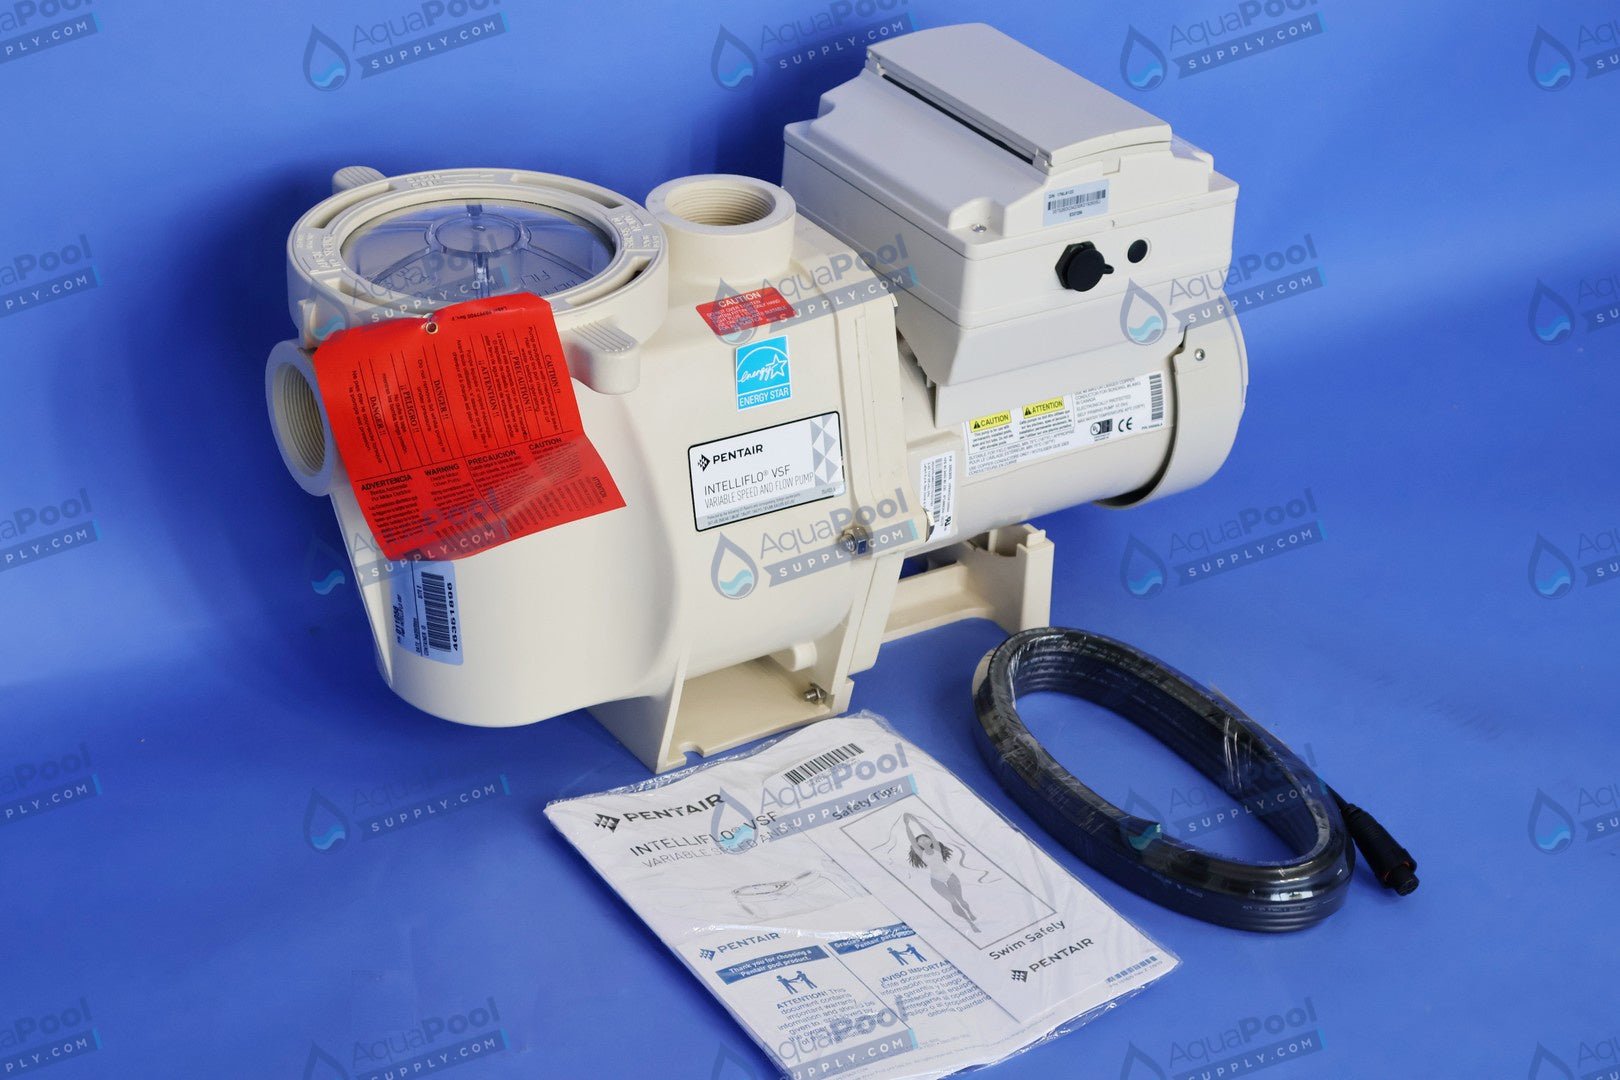 Pentair IntelliFlo® Variable Speed Pump EC-011028 (011056) - Variable Speed Pumps - img-9